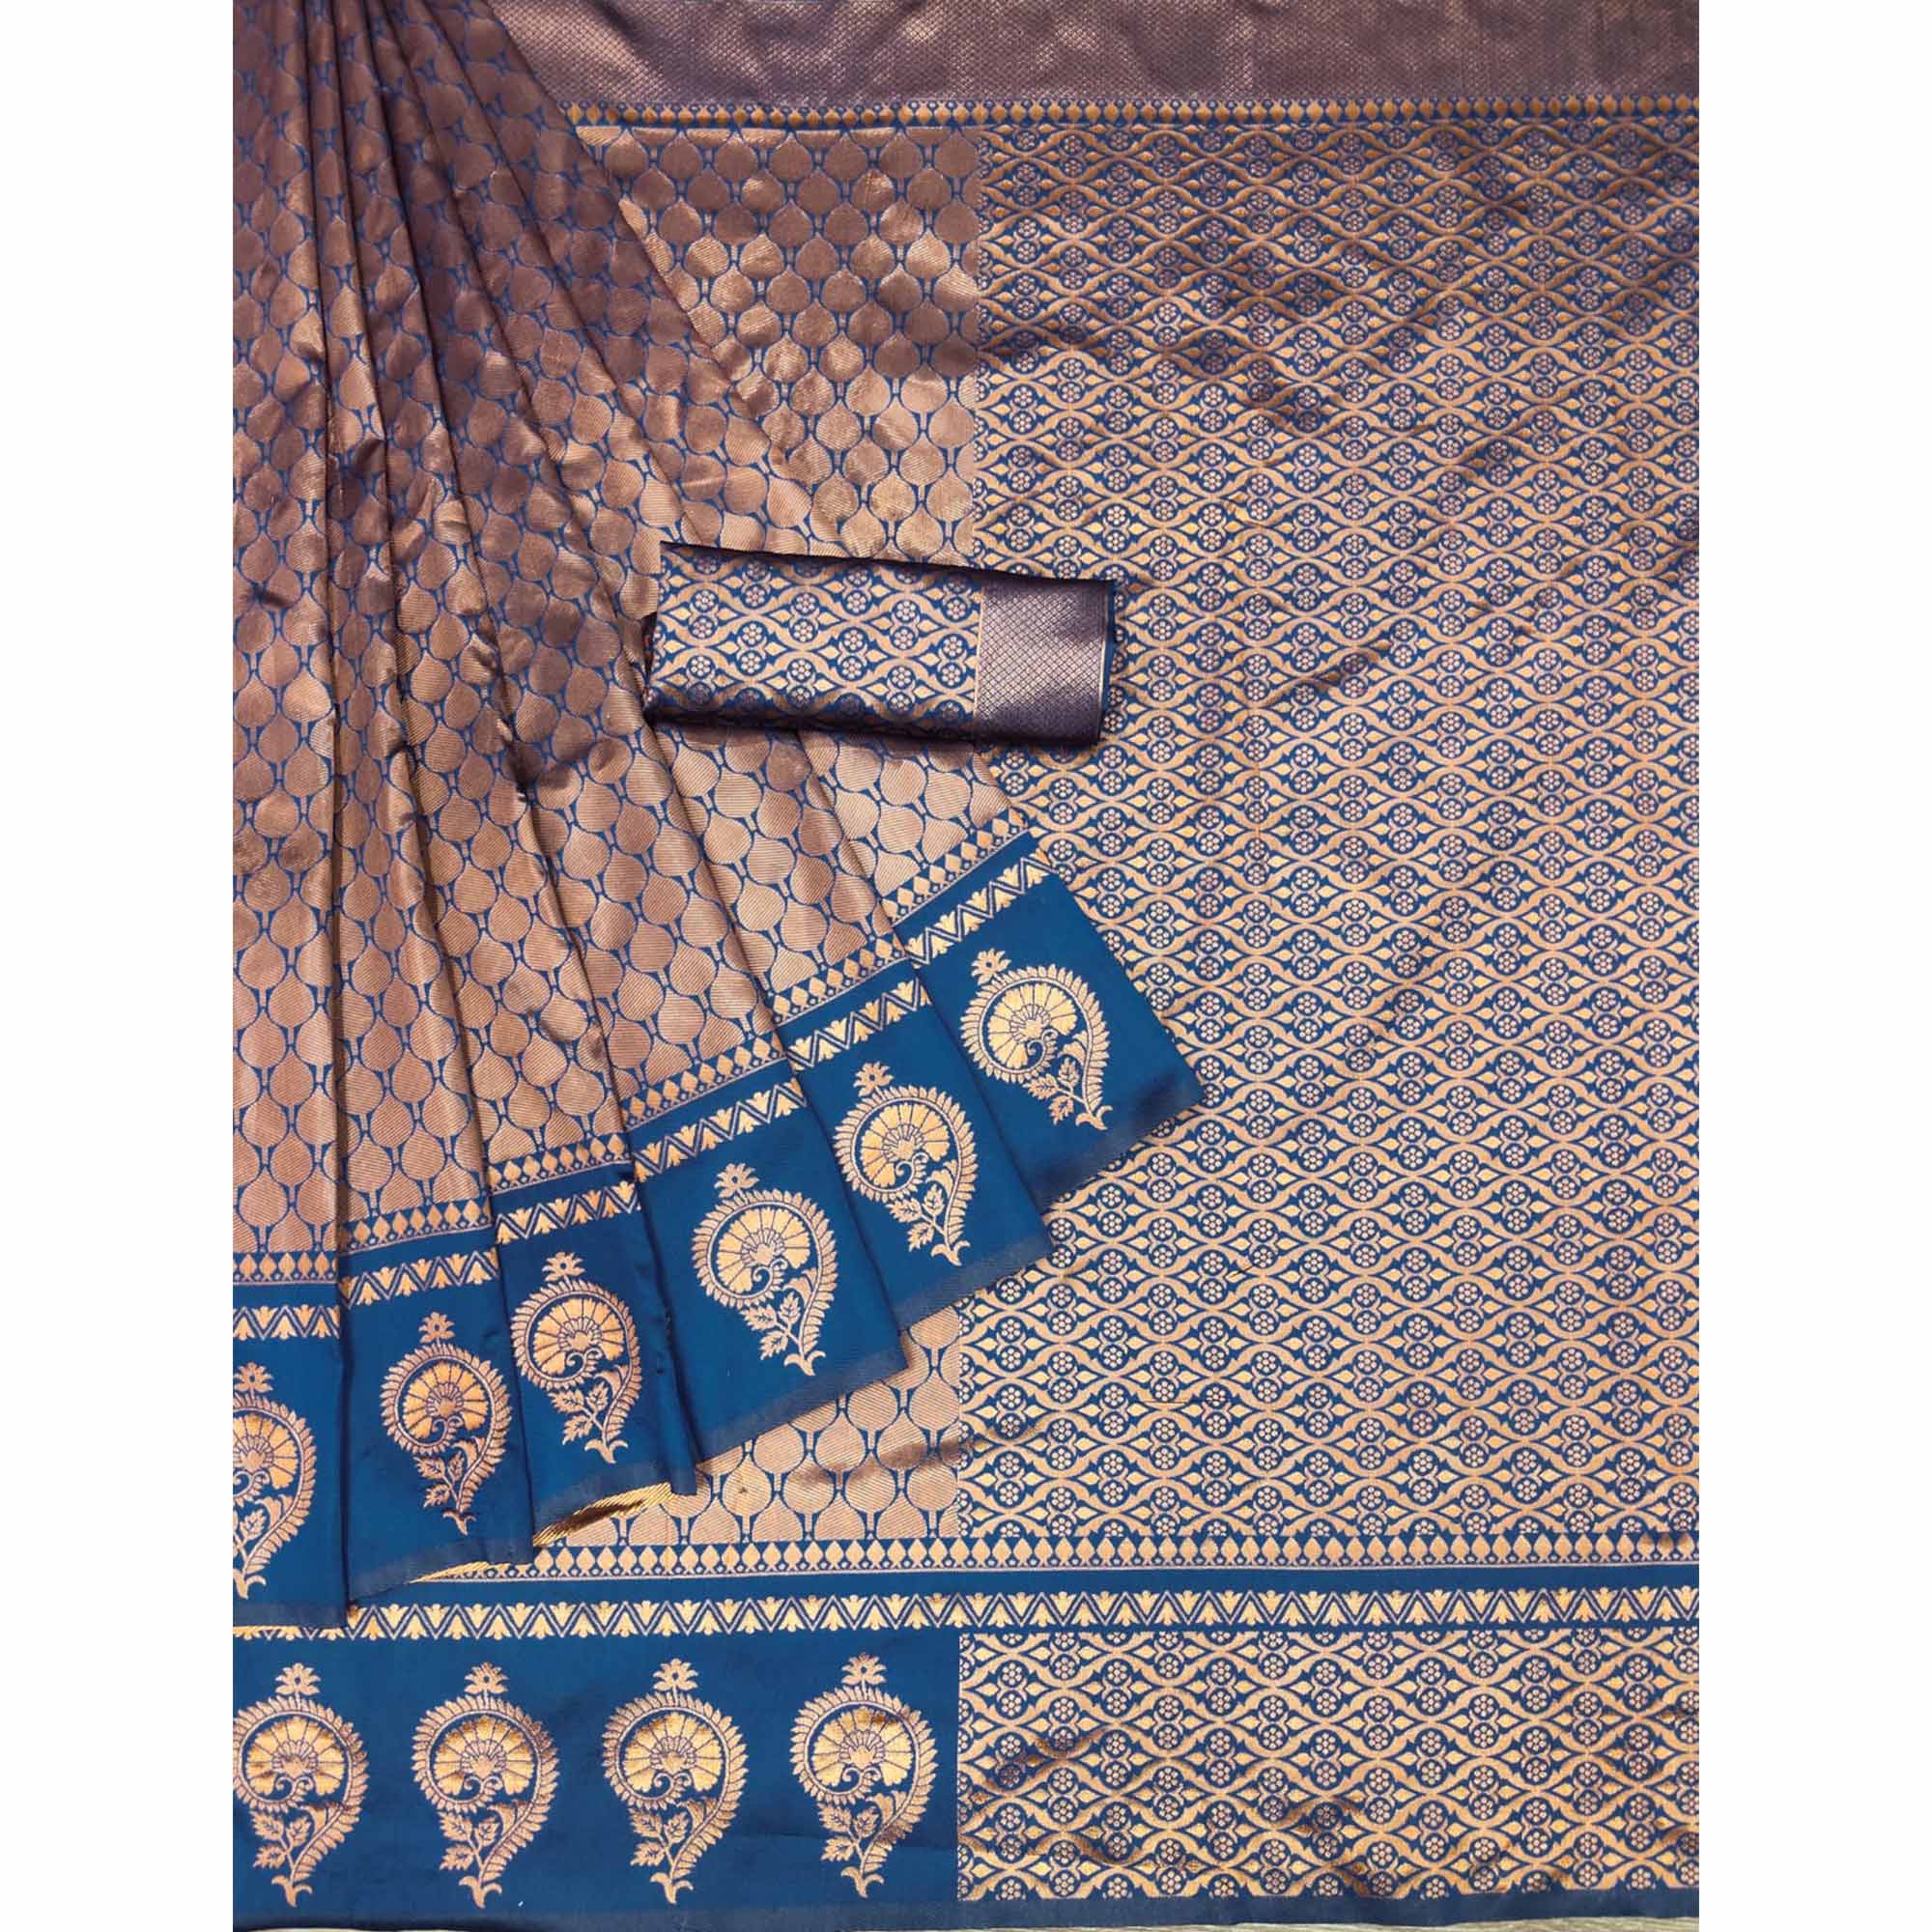 Blue Woven Banarasi Silk Saree